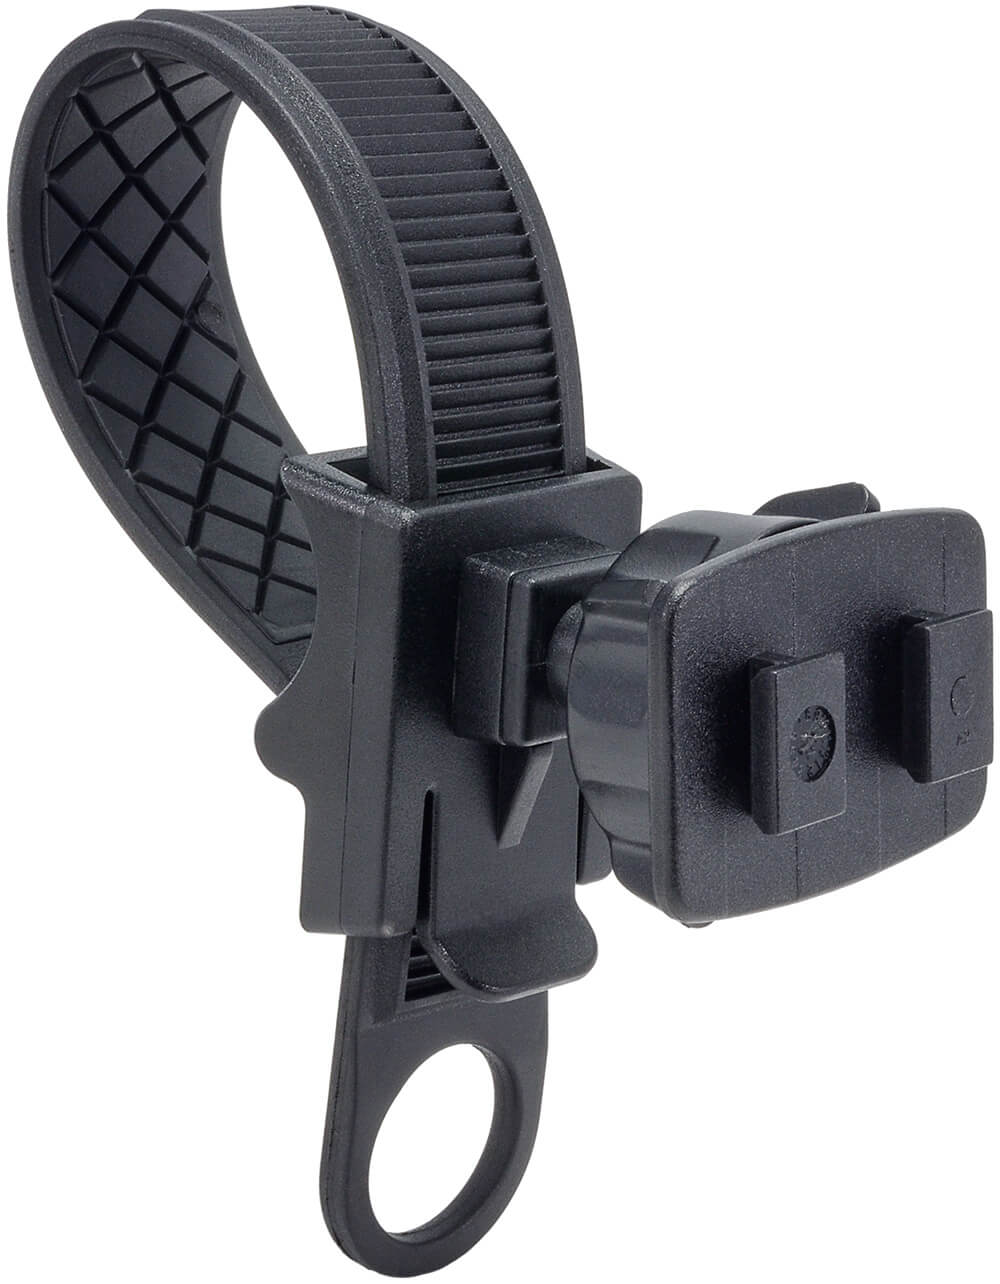 Handlebar adjustable strap mount